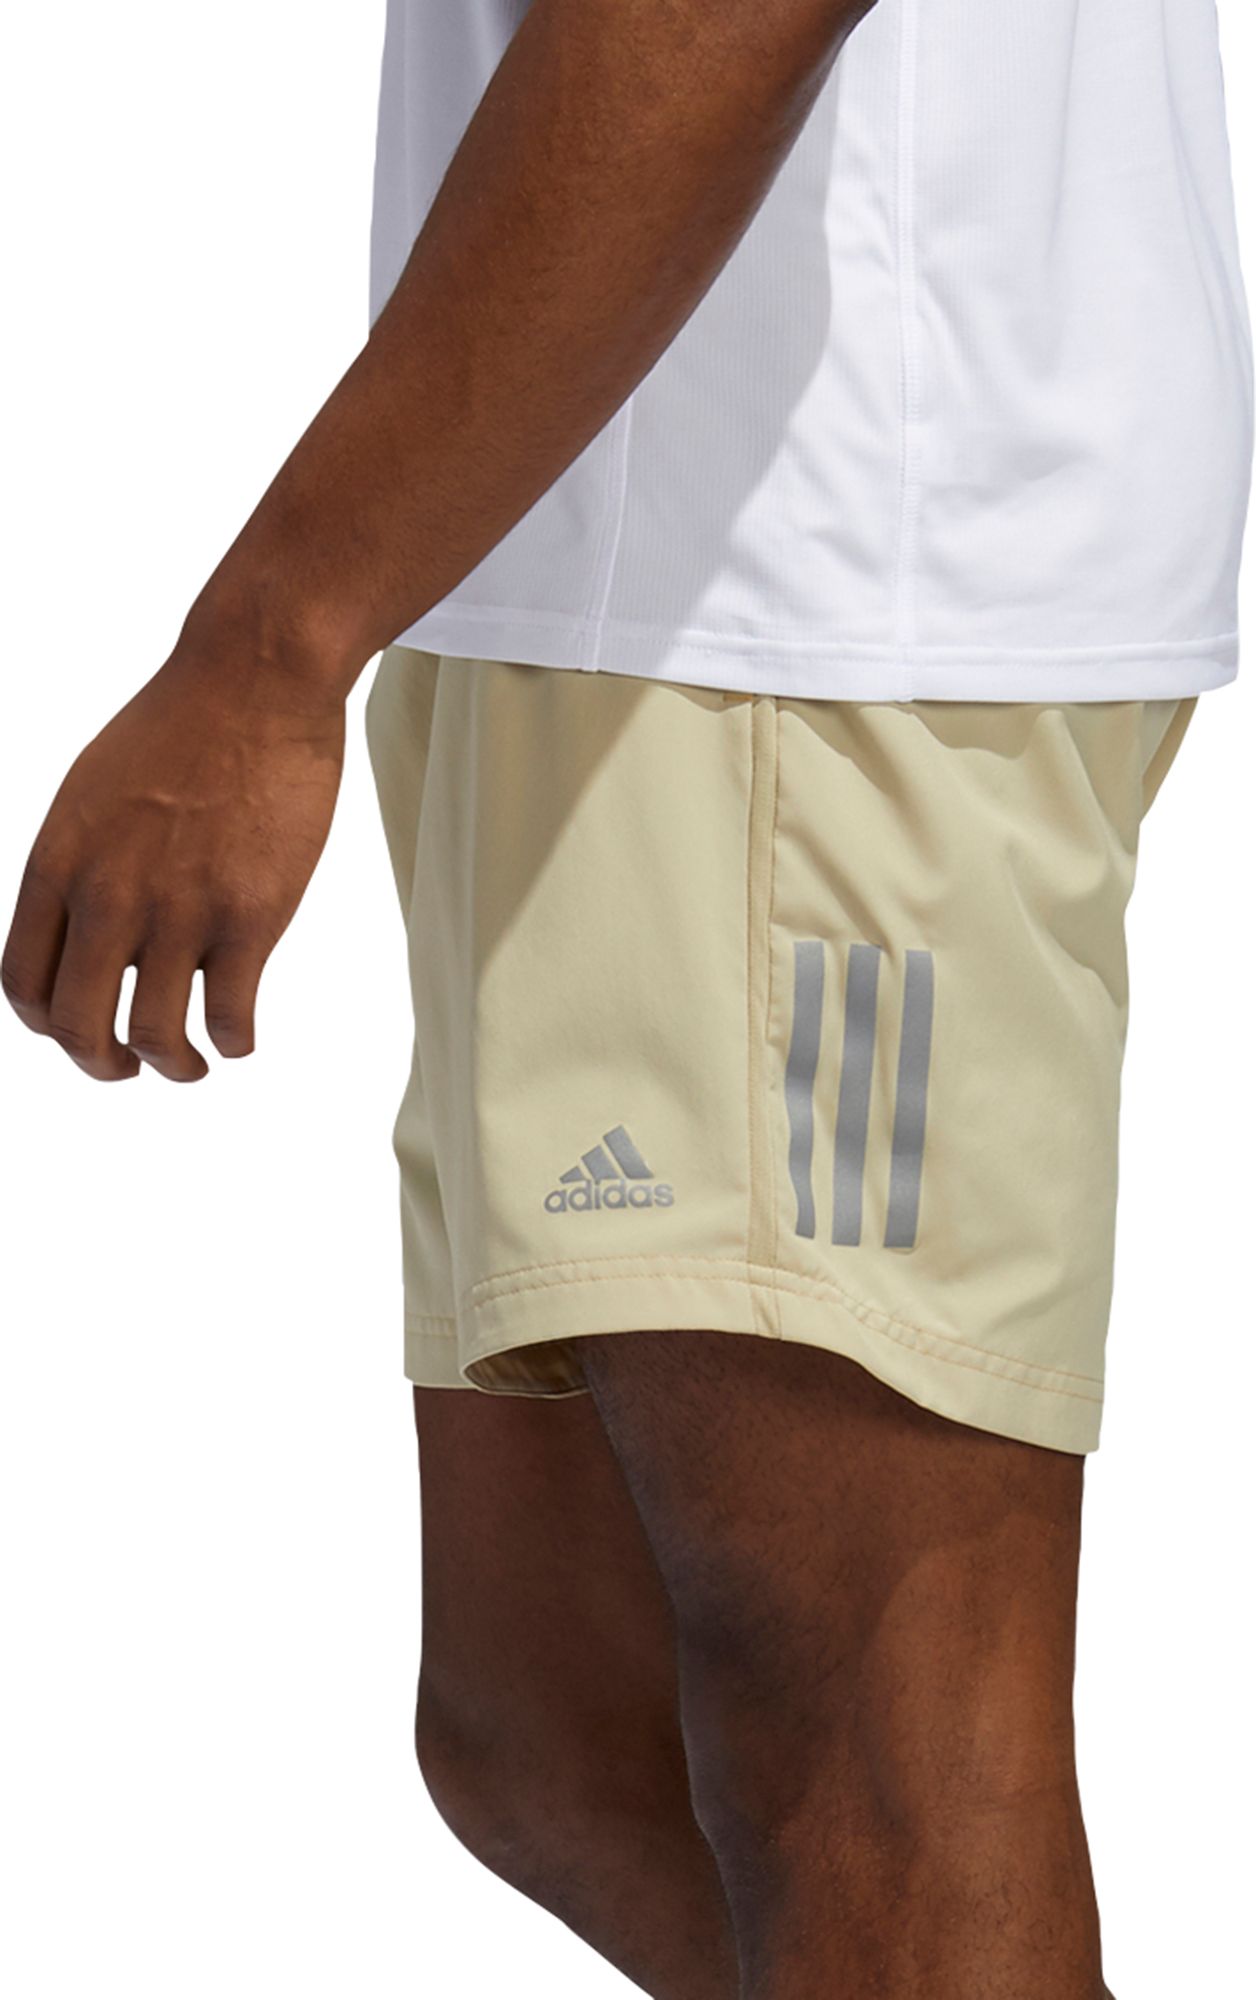 adidas own the run shorts